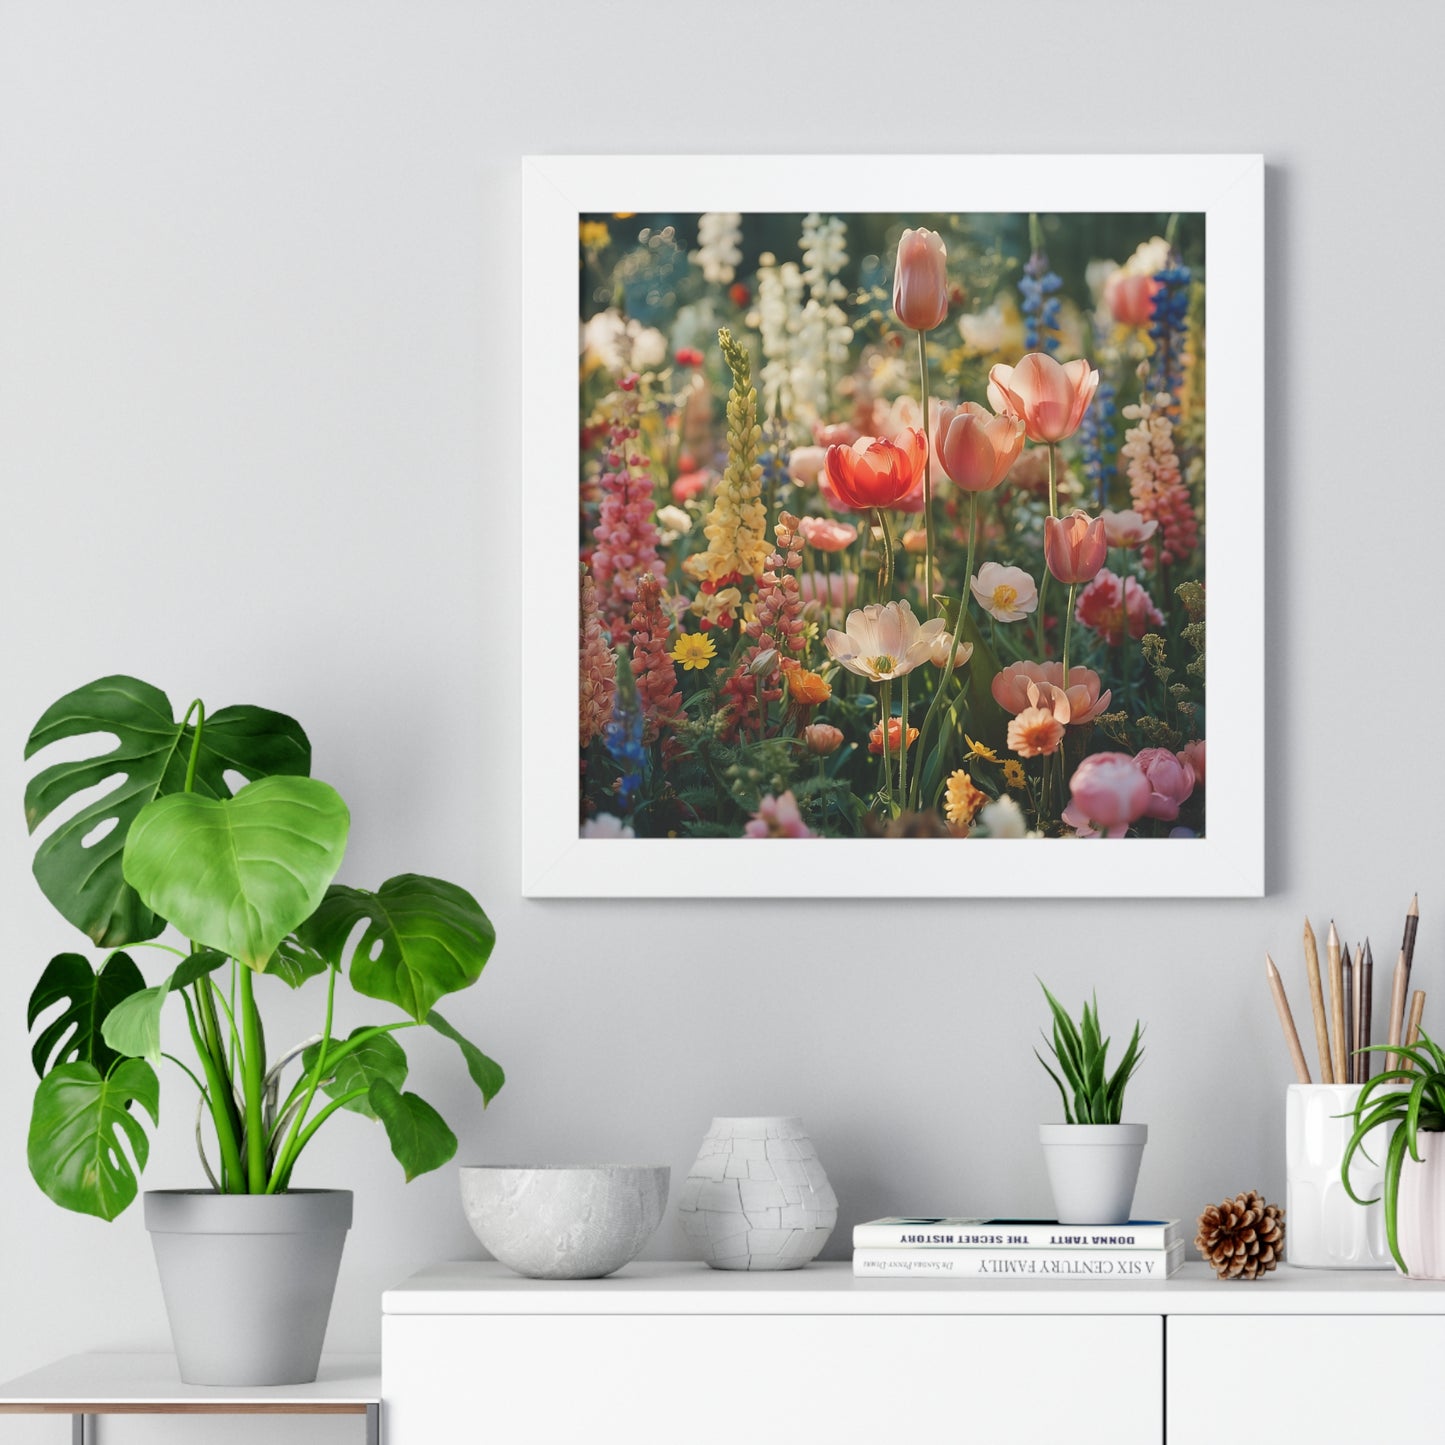 Colorful Spring Garden Framed Vertical Poster